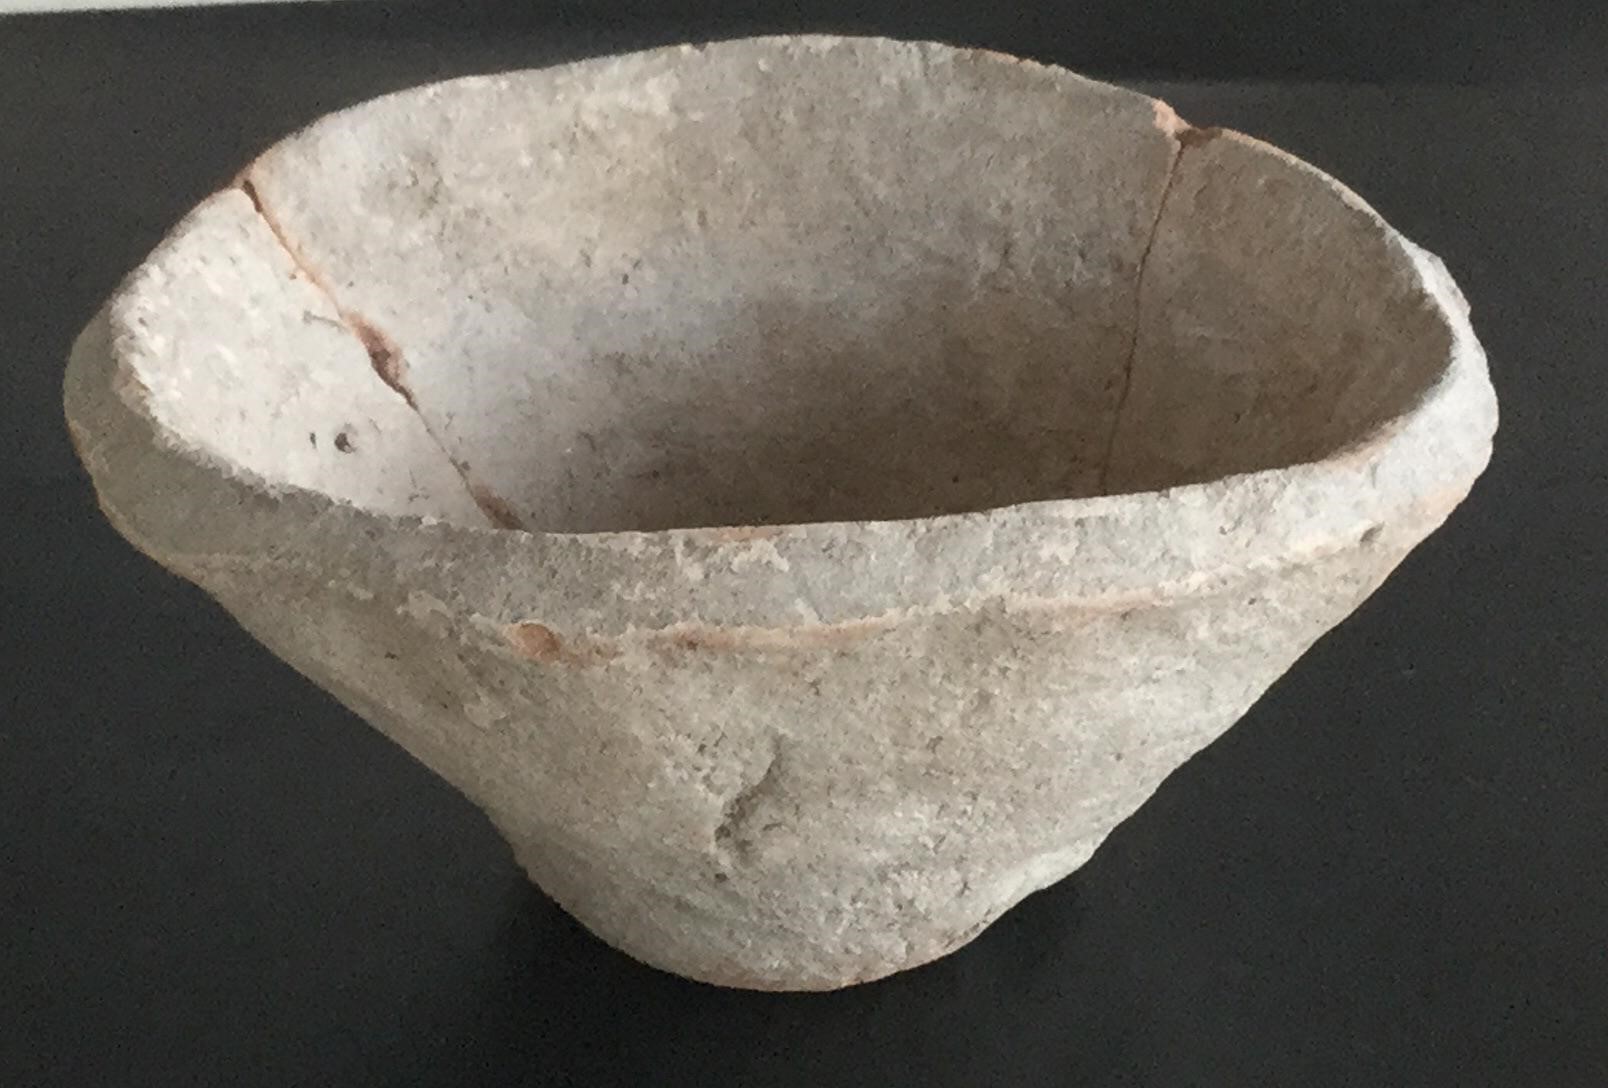 与中精心制作的碗和花瓶相比，乌鲁克最常见 的陶瓷制品是粗糙的「斜边碗」。但其并不像 它看起来的那样是退步了。乌鲁克繁荣昌盛， 它的陶工正忙于创造历史上第一个批量生产的 物品。//图片来源：Schauschgamuwa